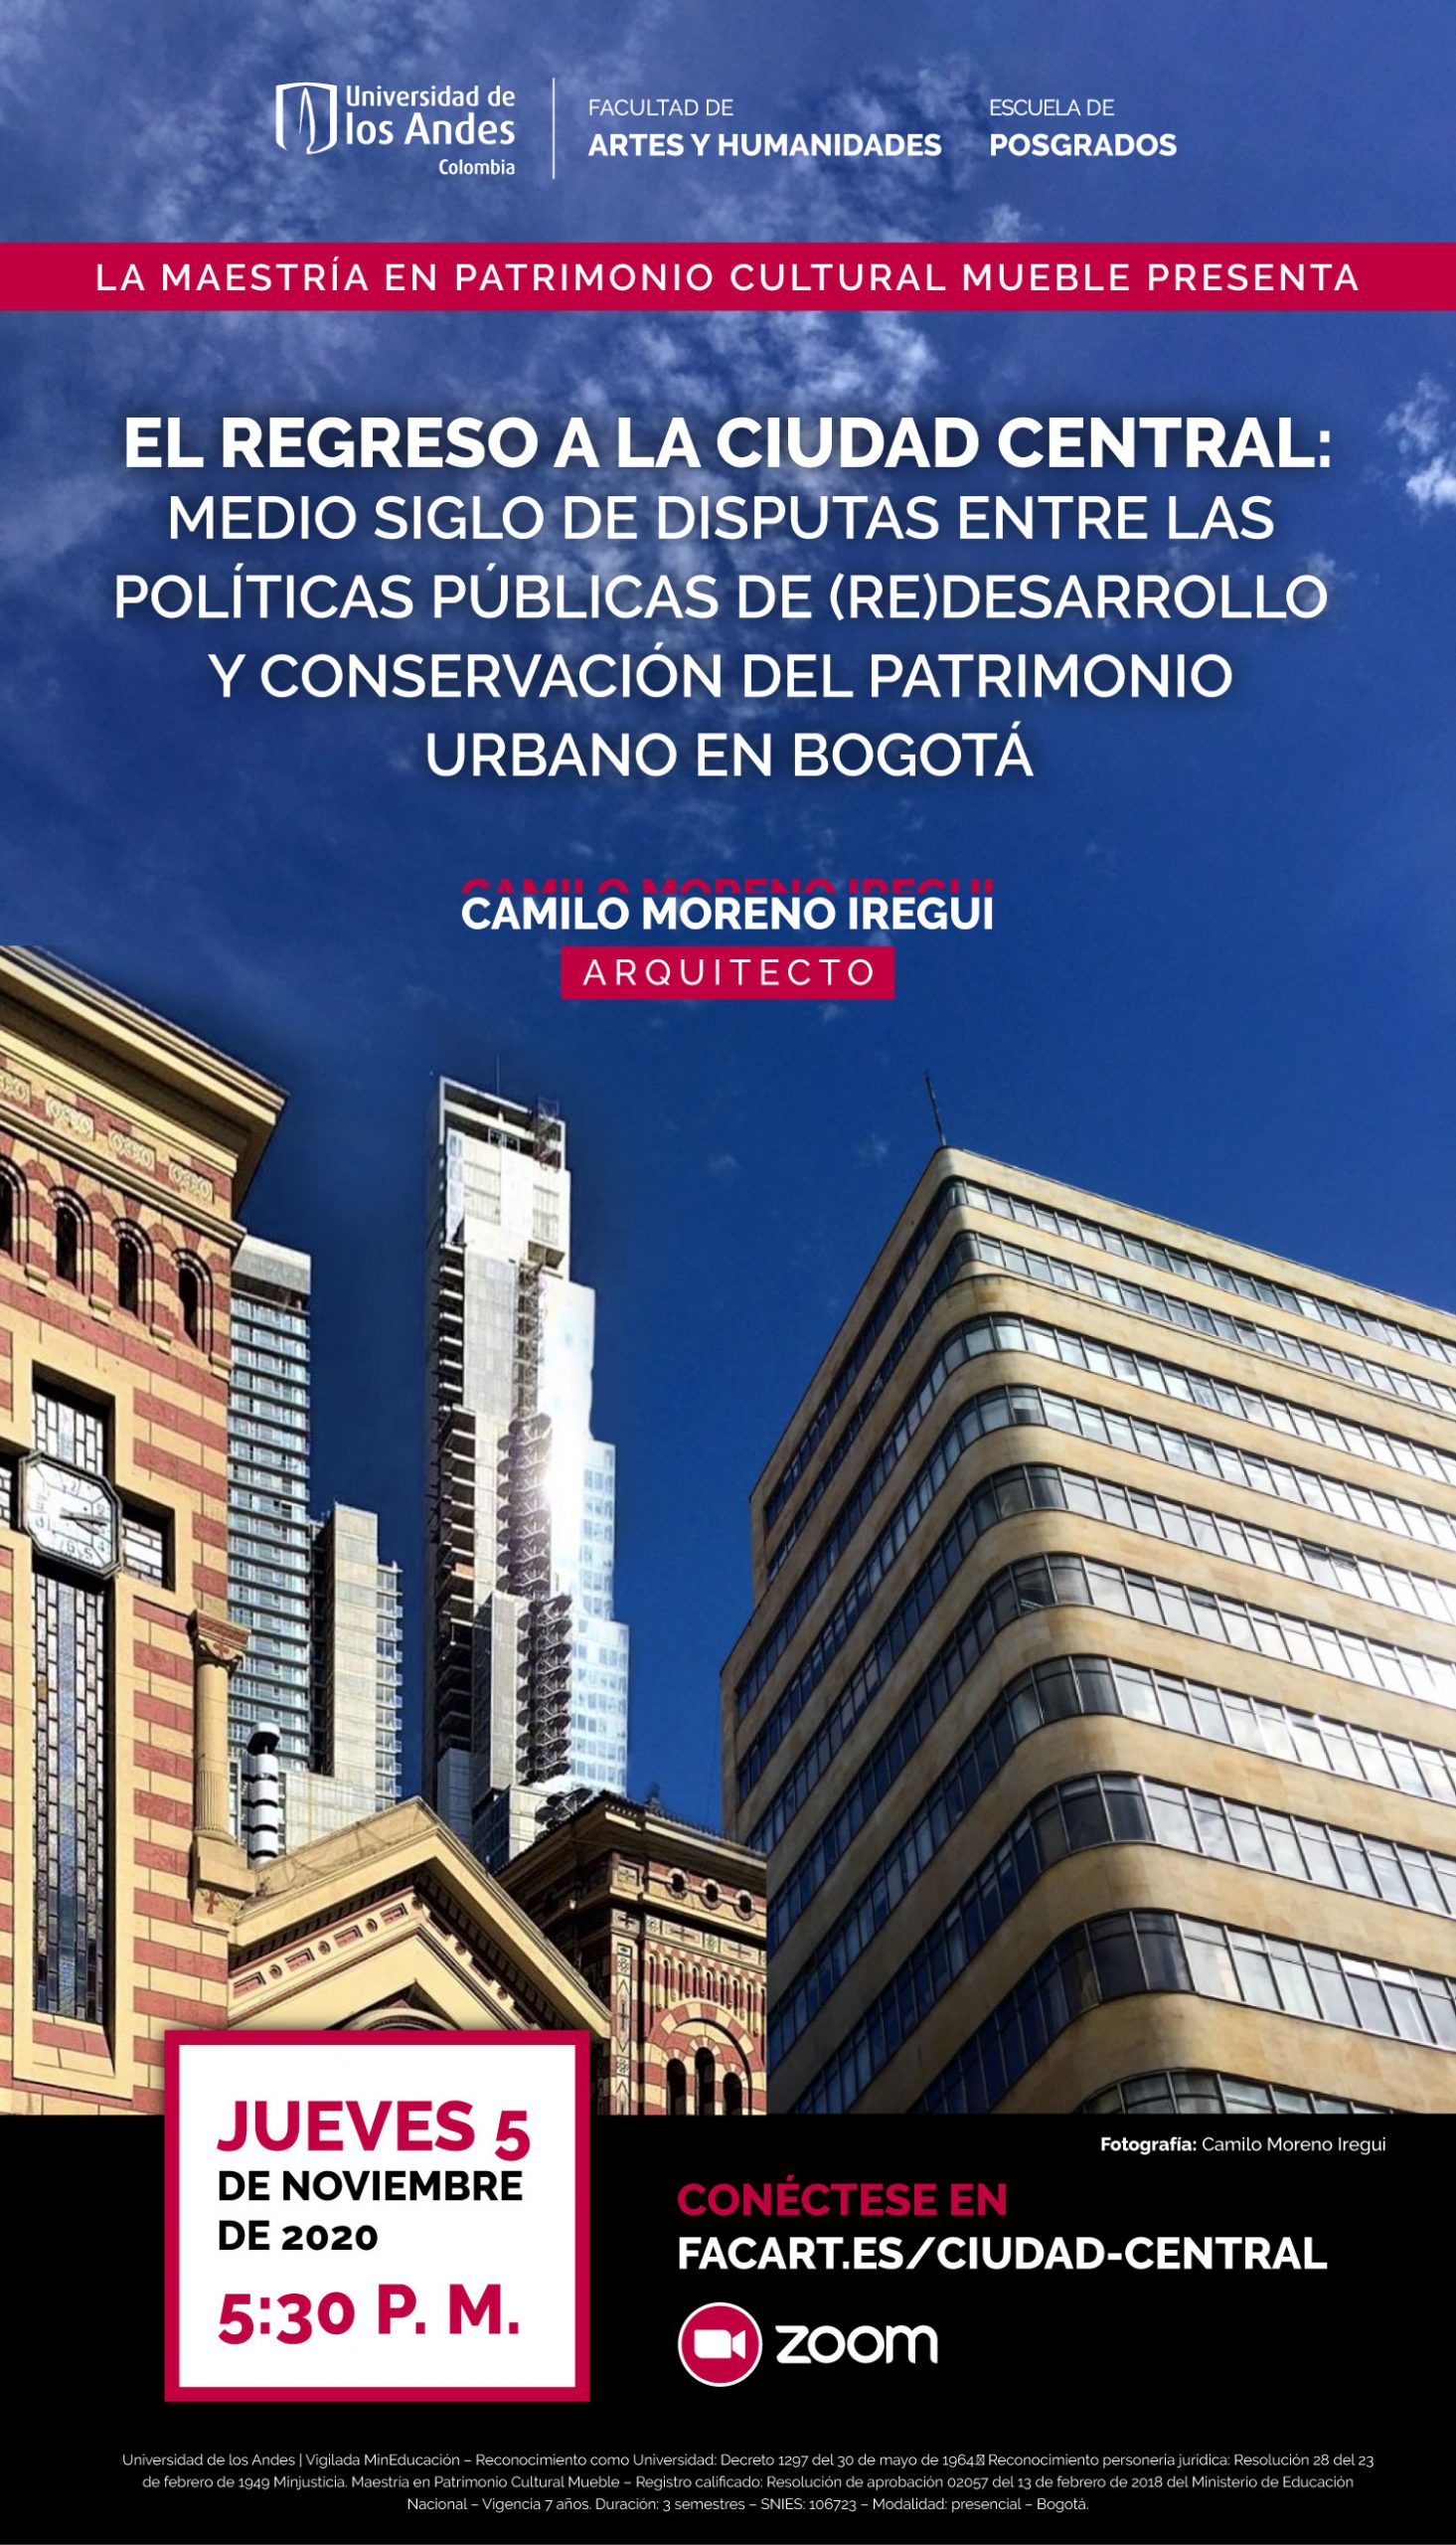 El regreso a la ciudad central: medio siglo de disputas entre las políticas públicas de (re)desarrollo y conservación del patrimonio urbano en Bogotá